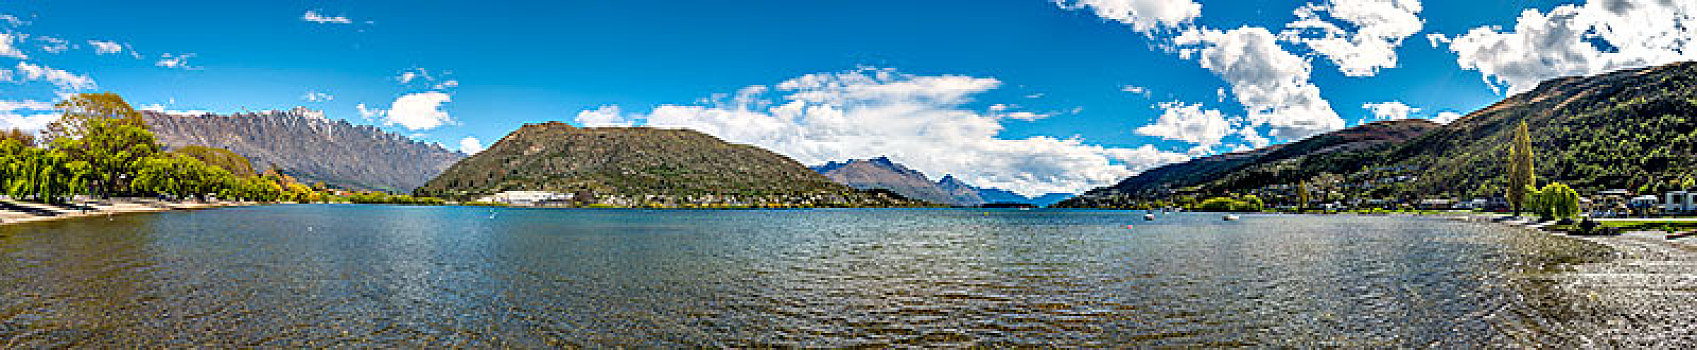 瓦卡蒂普湖,正面,山脉,皇后镇,奥塔哥地区,南部地区,新西兰,大洋洲